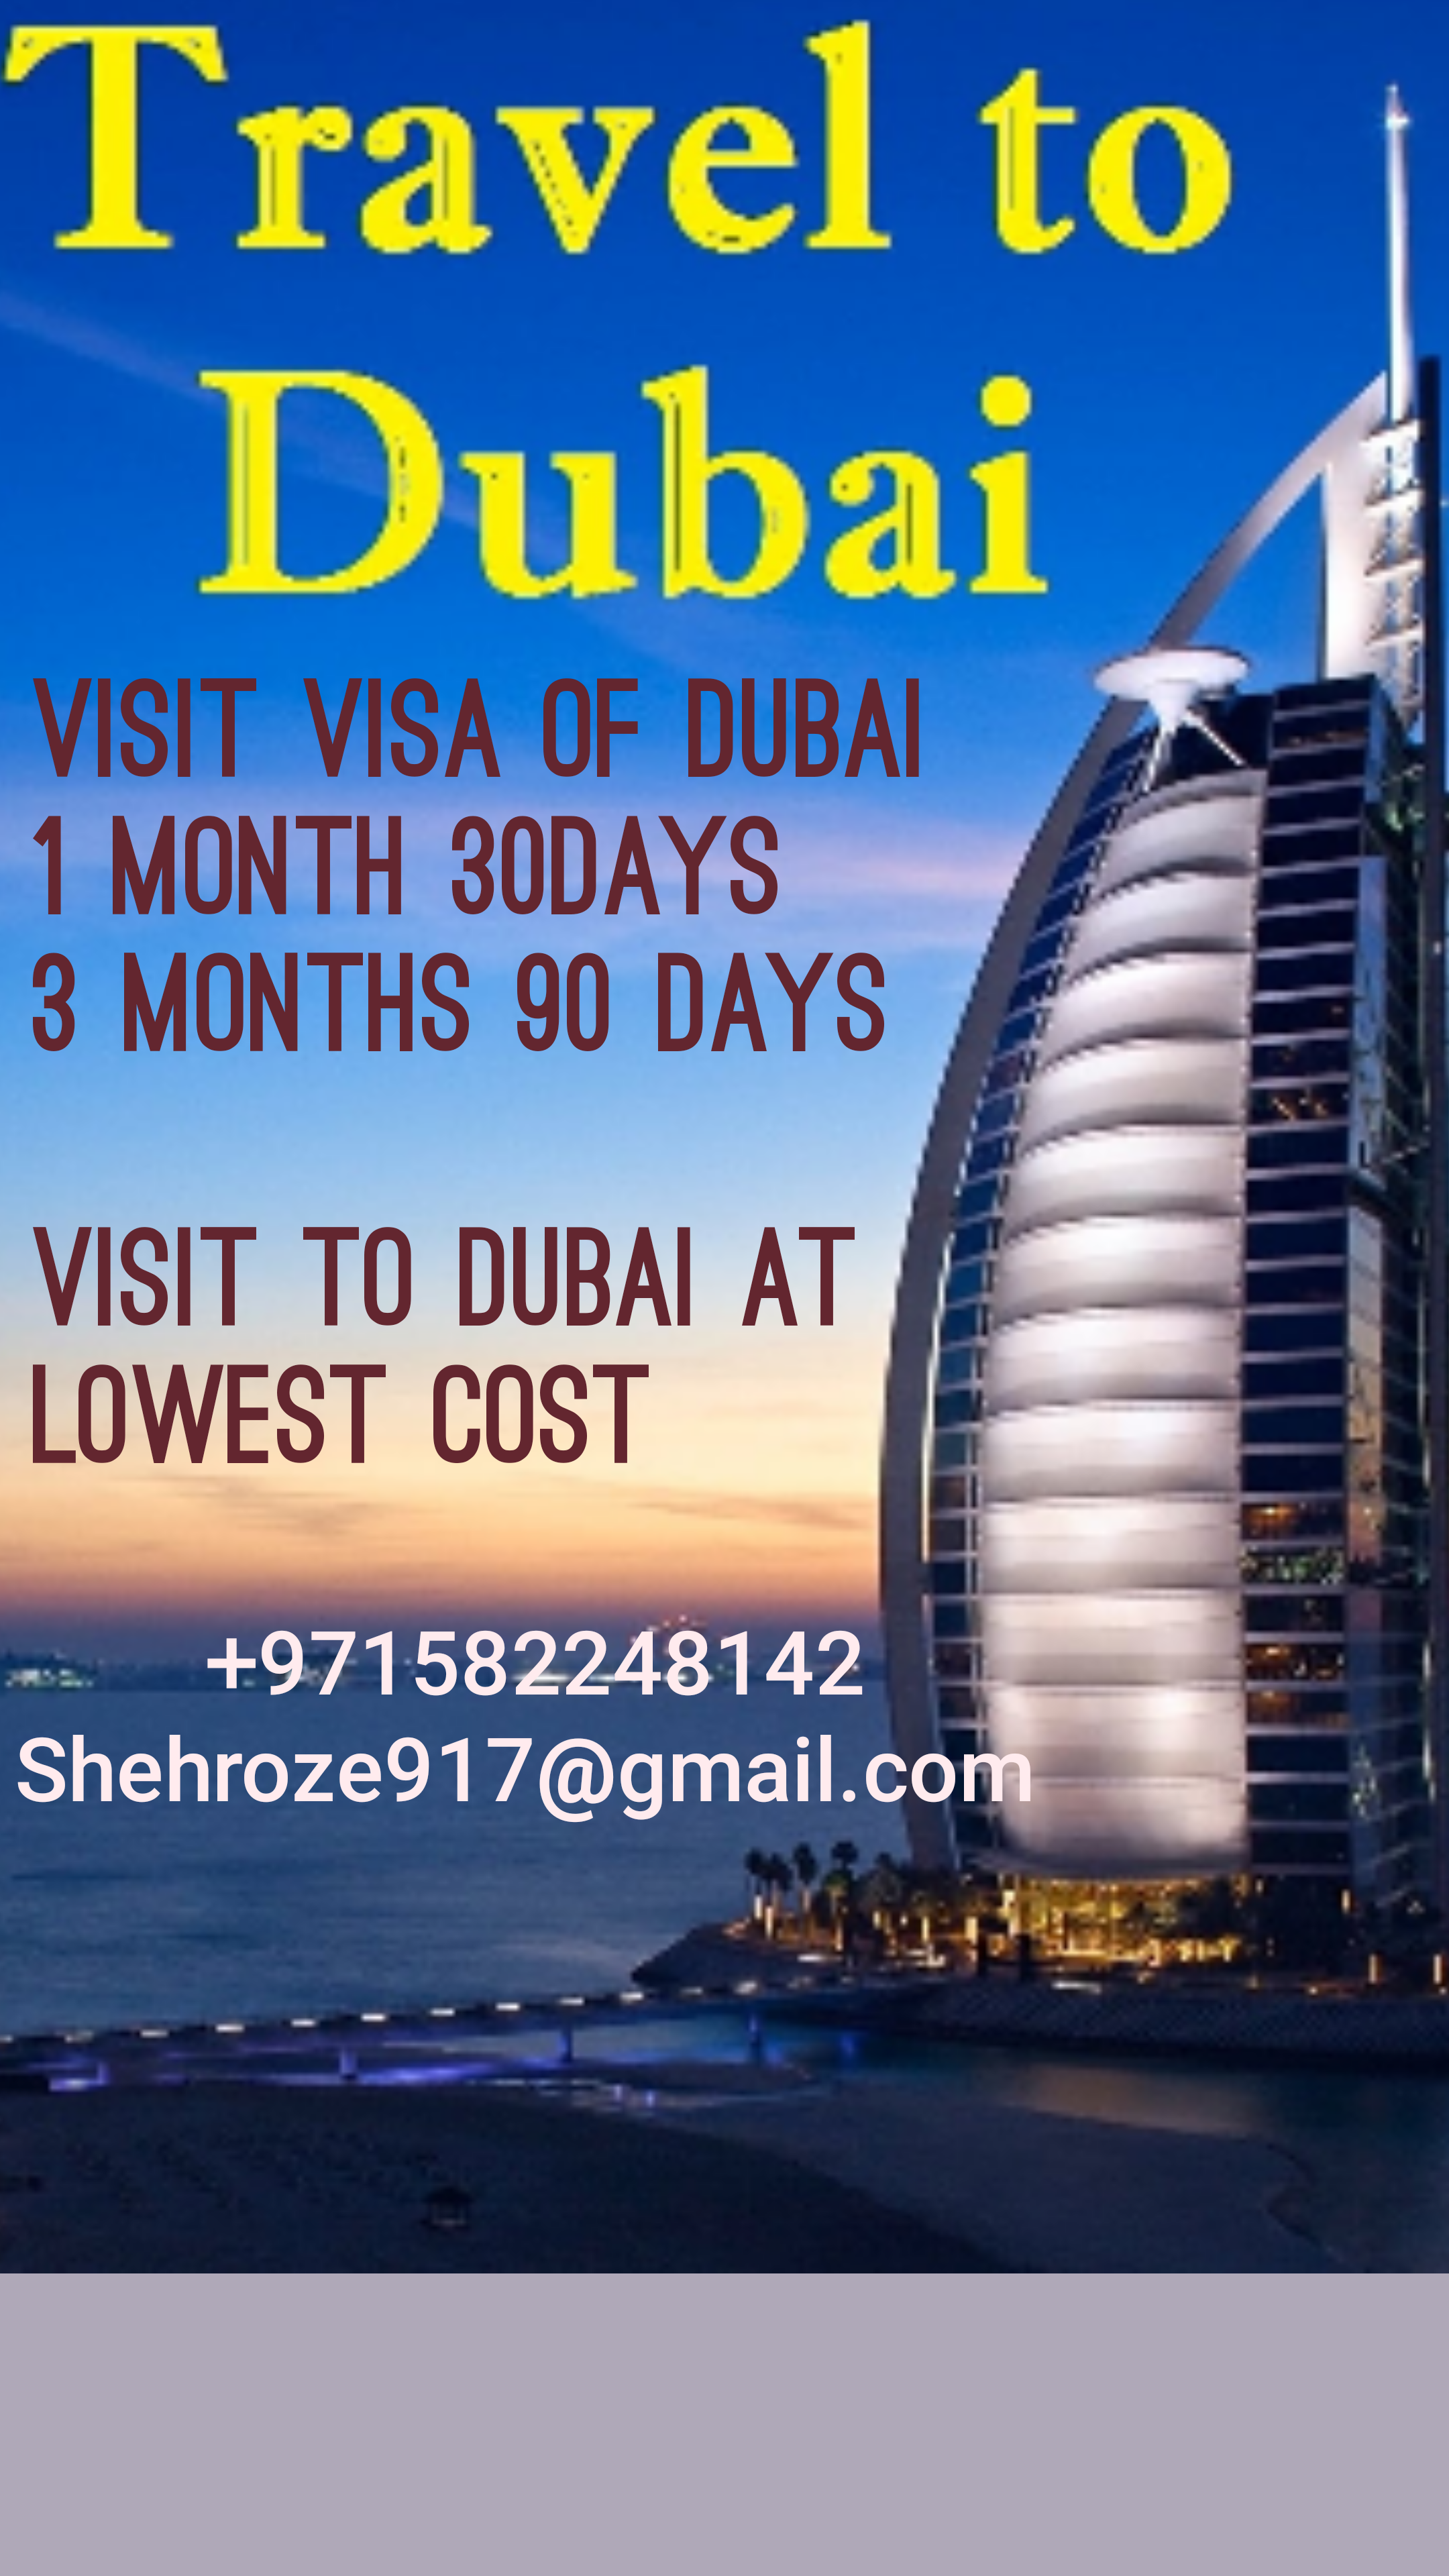 Dubai Visit Visa Services